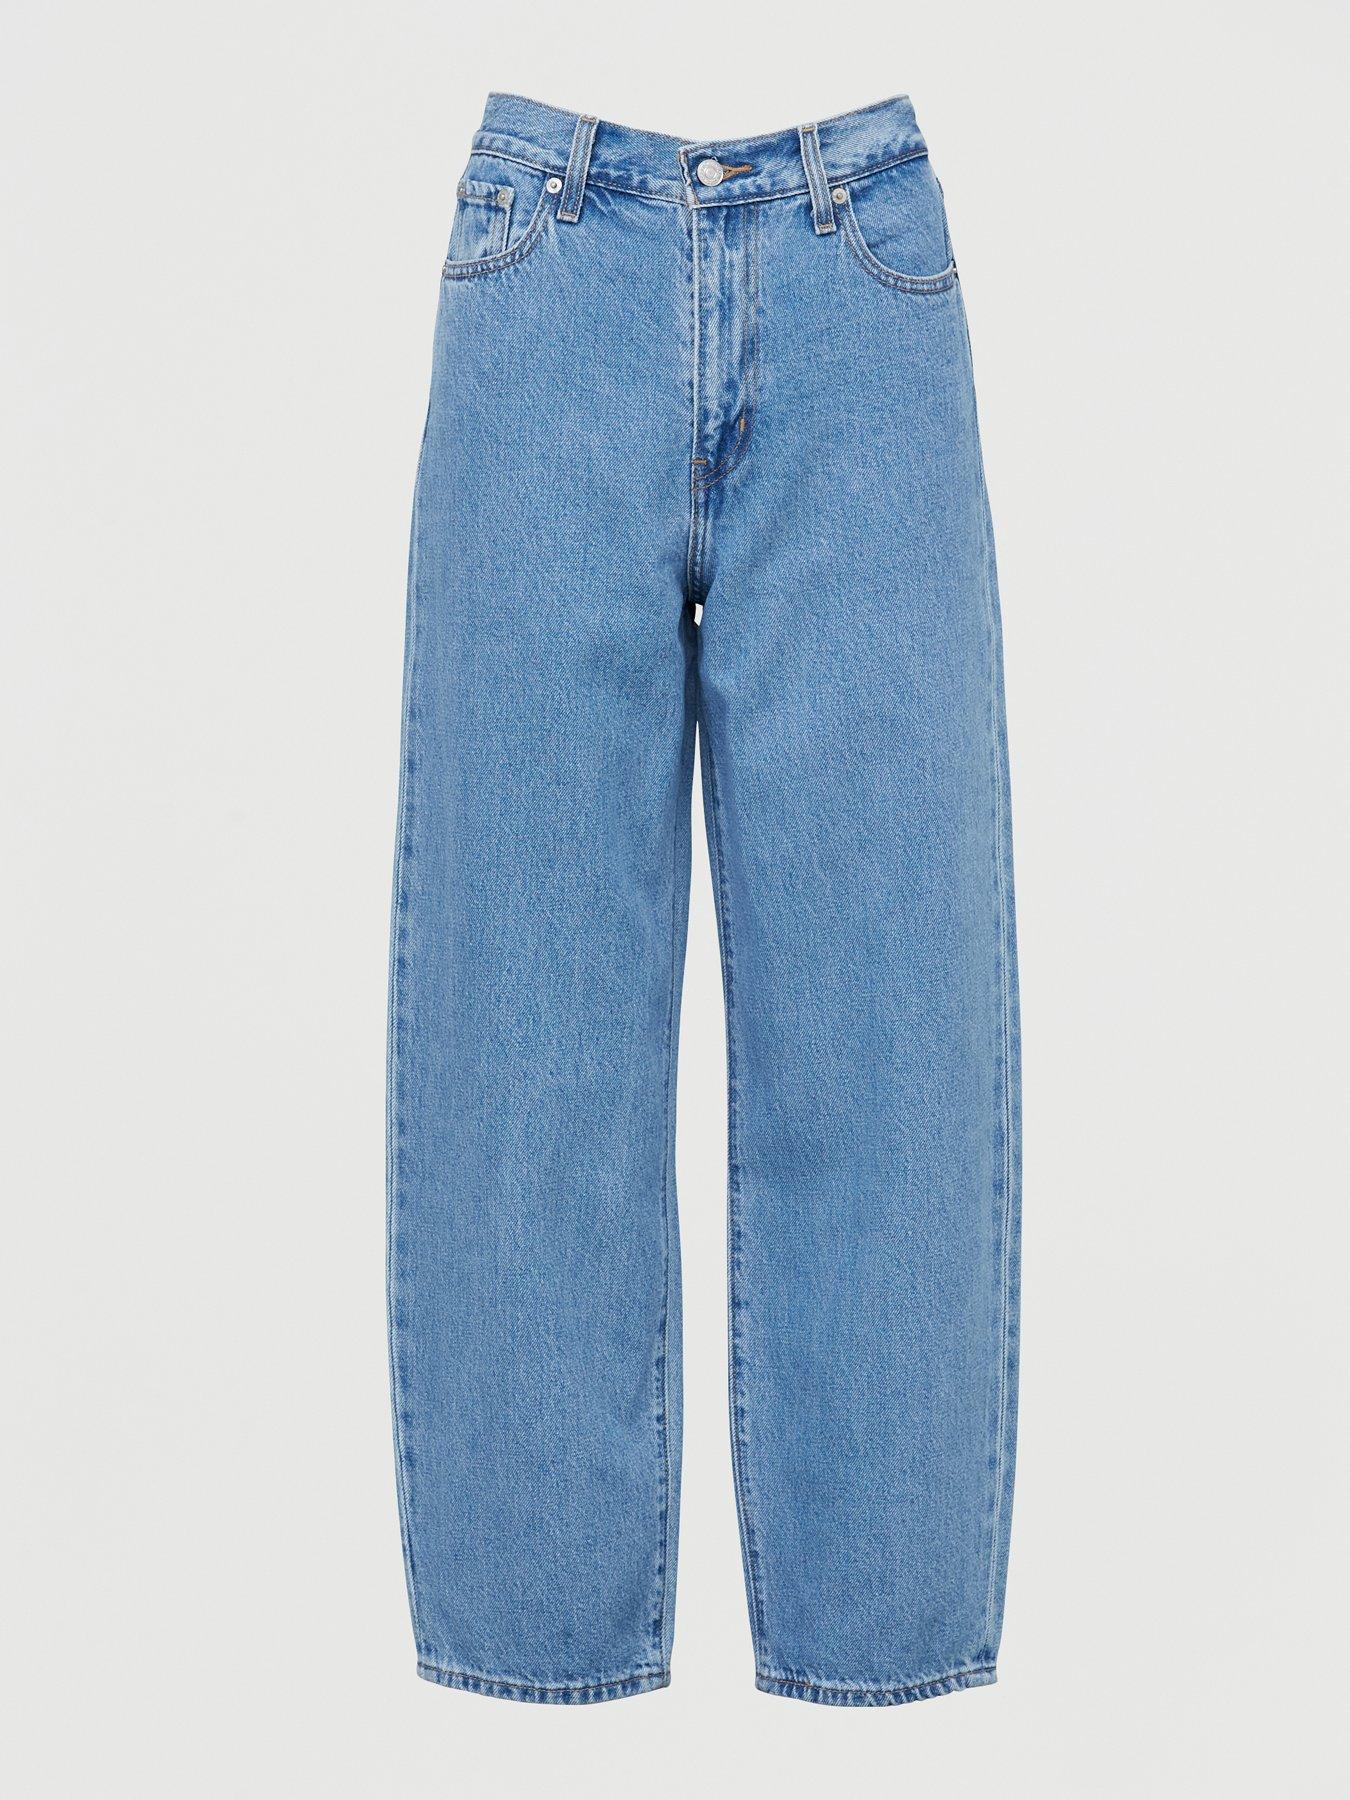 womens levis jeans uk